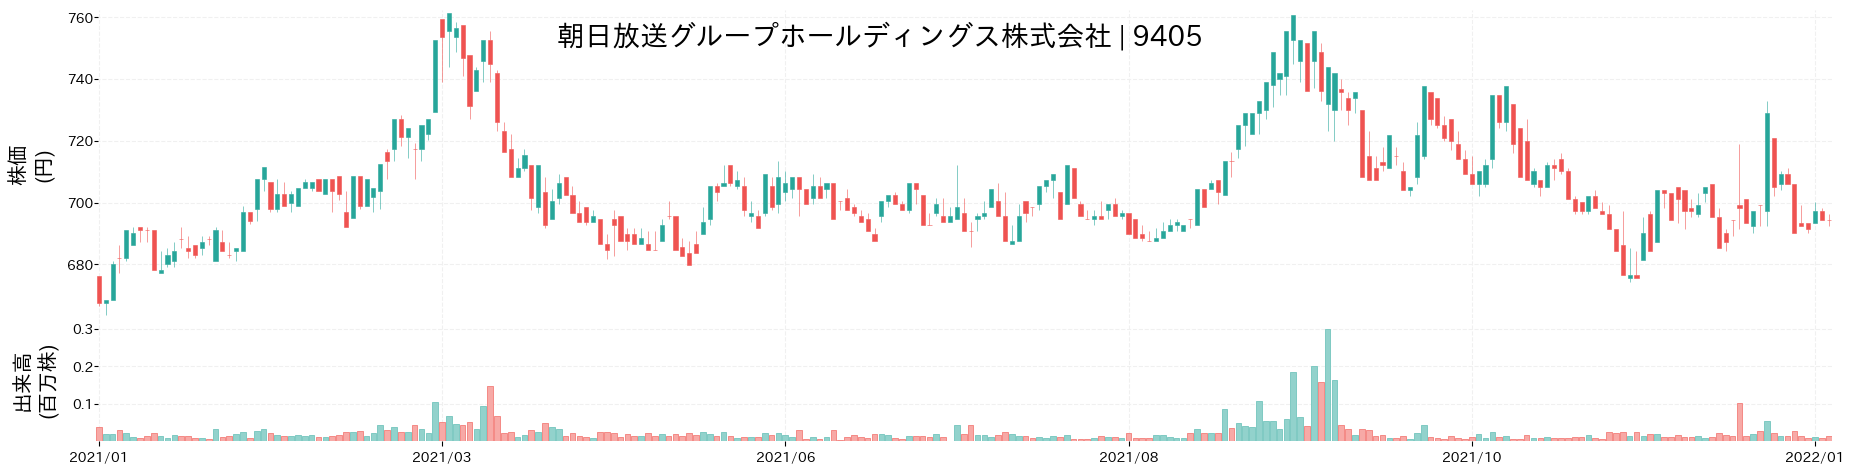 朝日放送グループホールディングスの株価推移(2021)